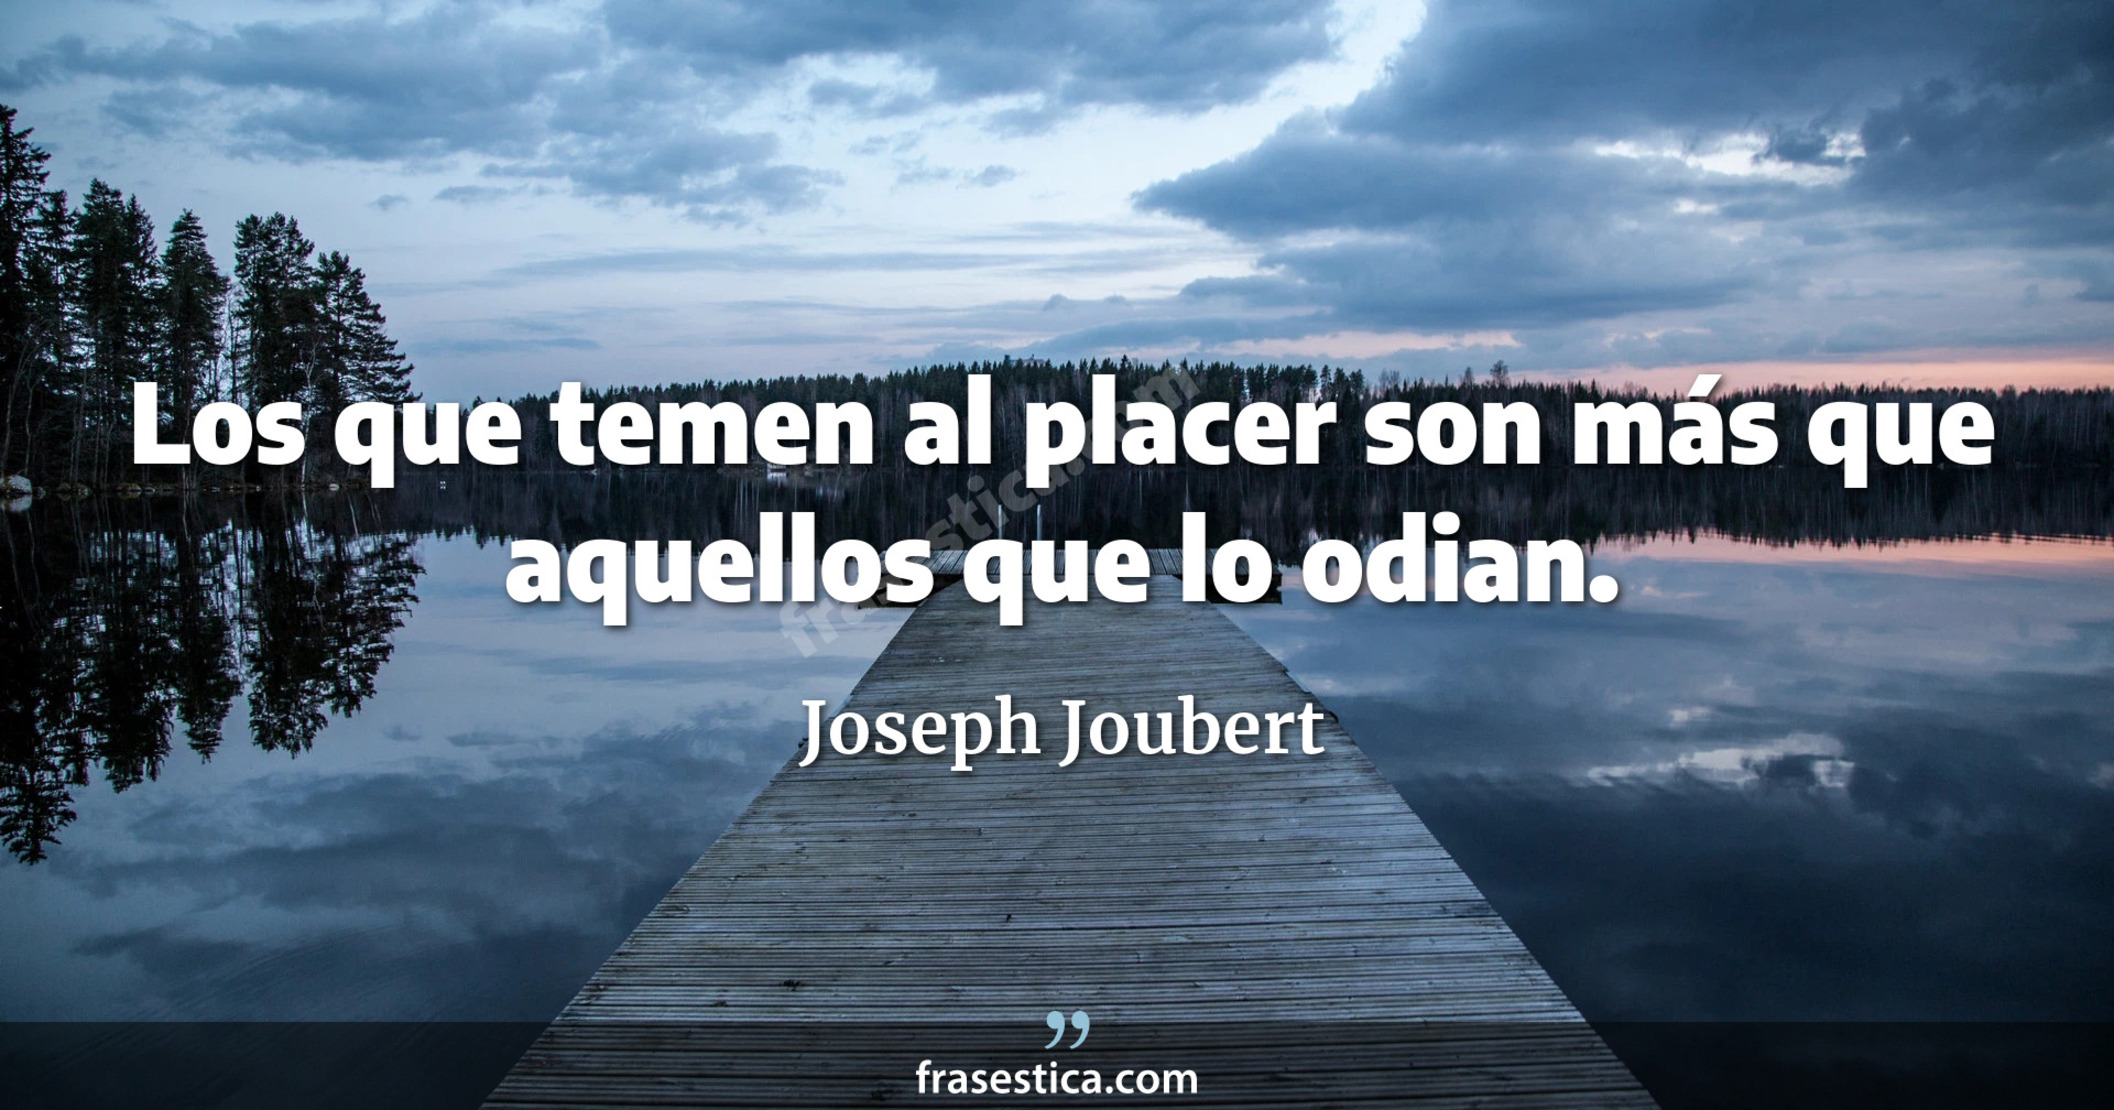 Los que temen al placer son más que aquellos que lo odian. - Joseph Joubert